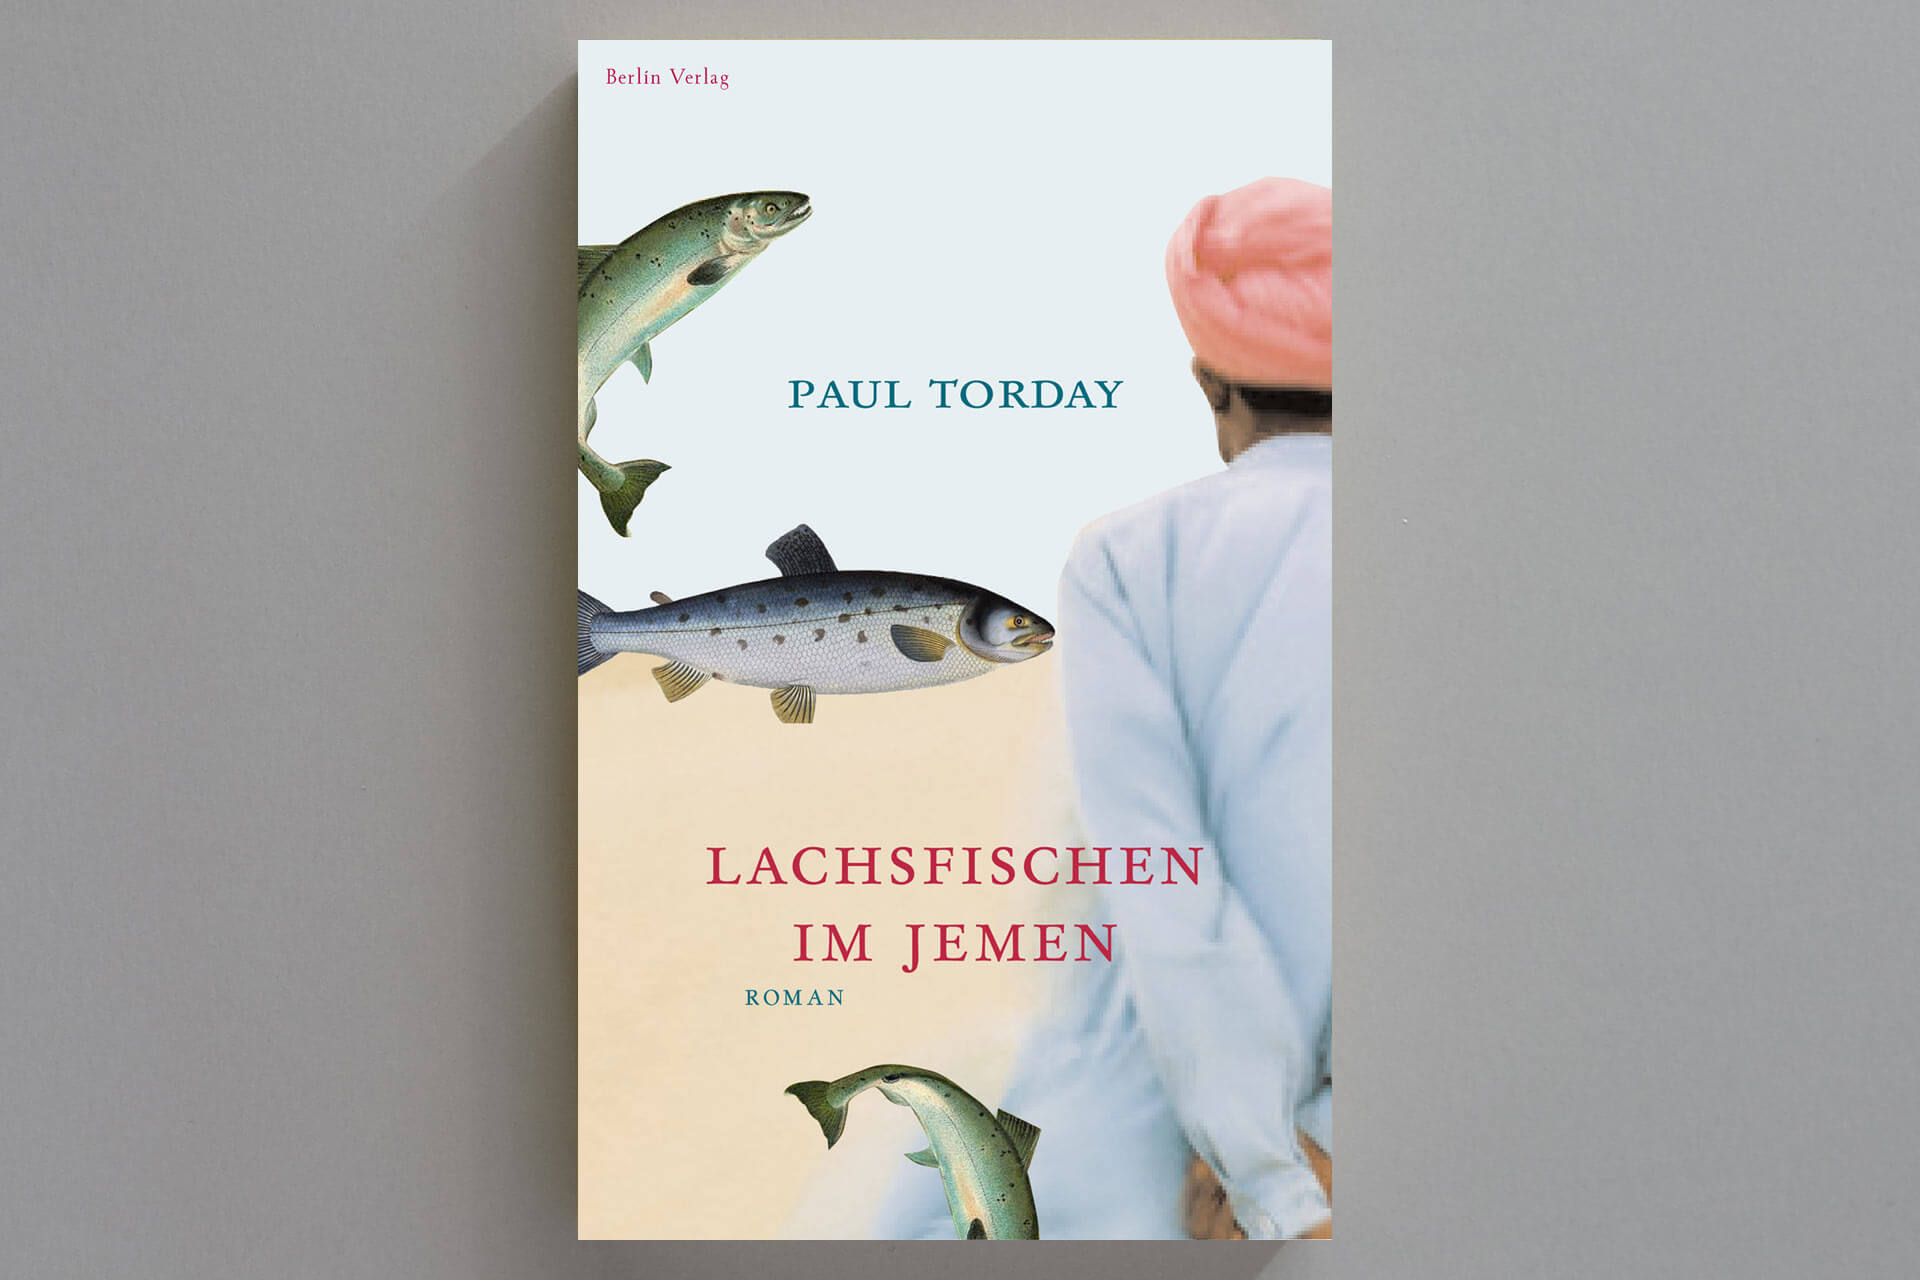 Abbildung einer Buchcover-Gestaltung für das Buch „Lachsfischen im Jemen“ von Paul Torday